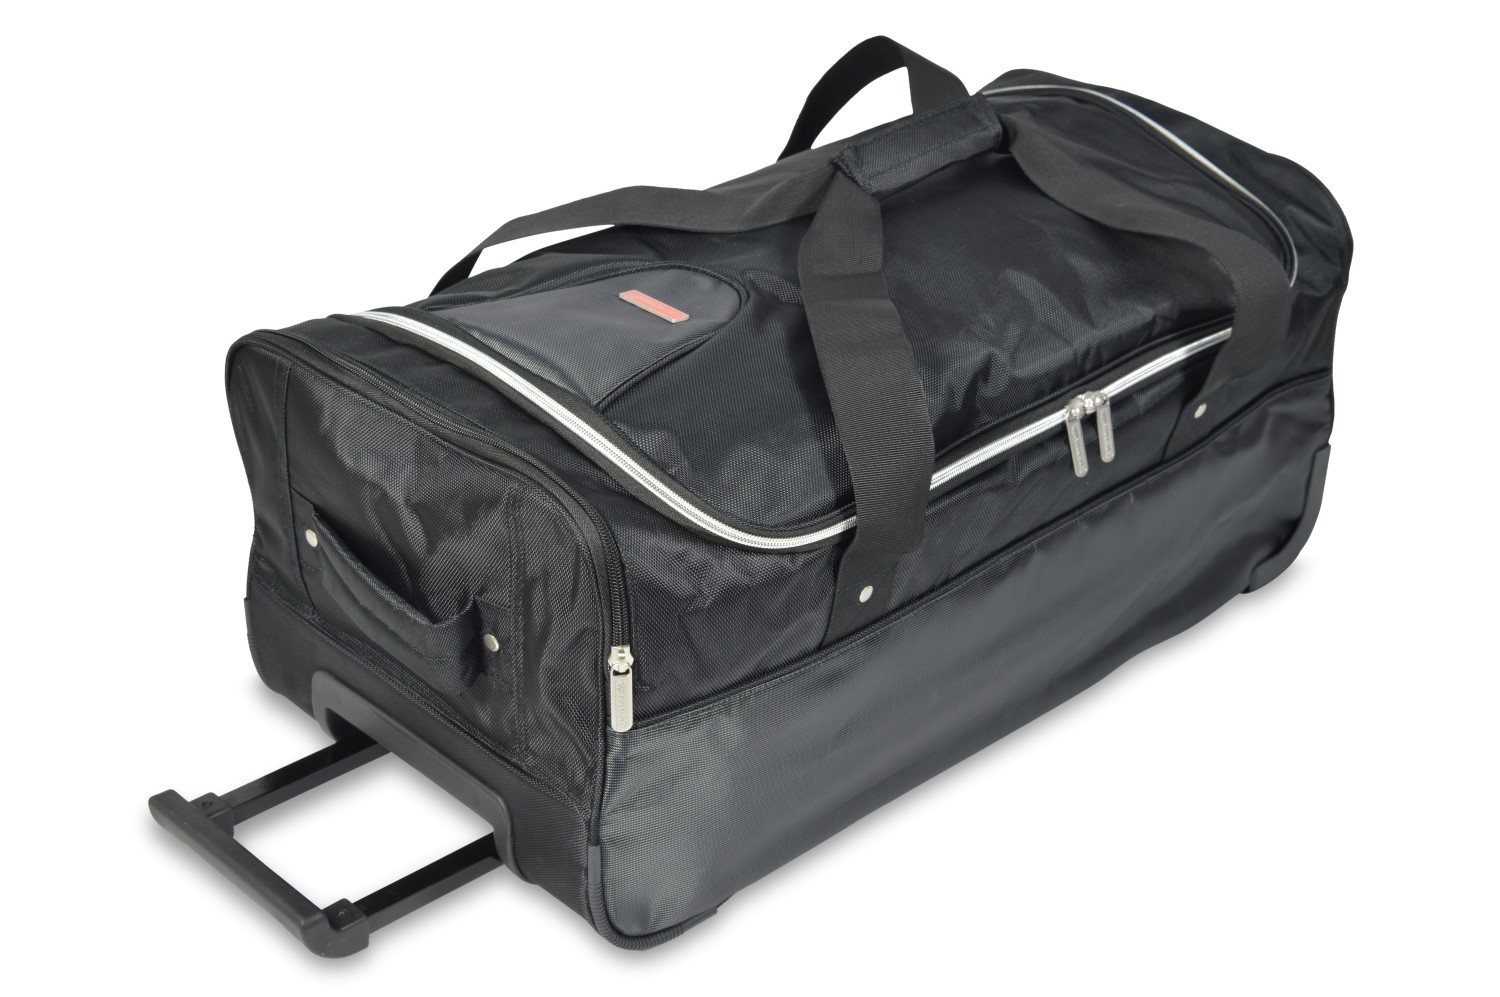 Trolley bag - 31x26x70cm (WxHxL)